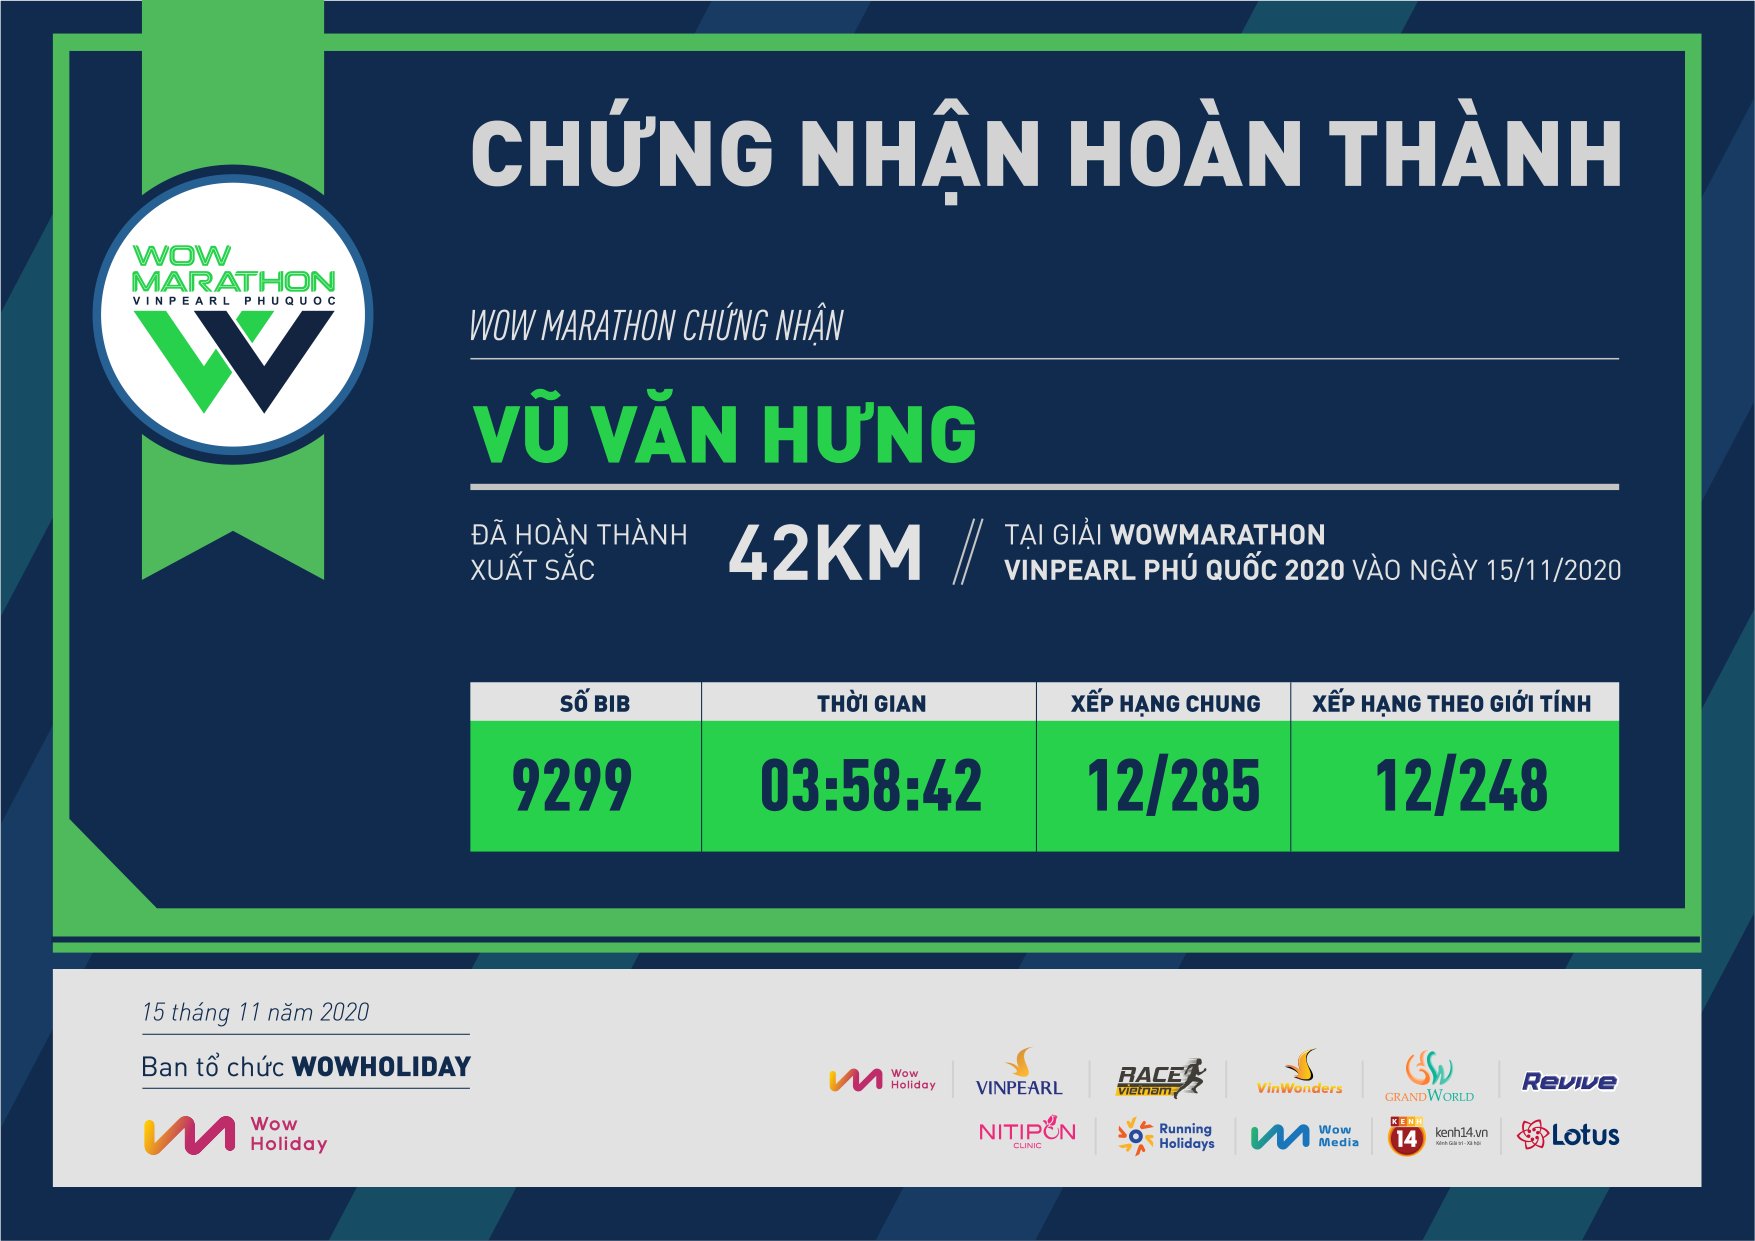 9299 - Vũ Văn Hưng